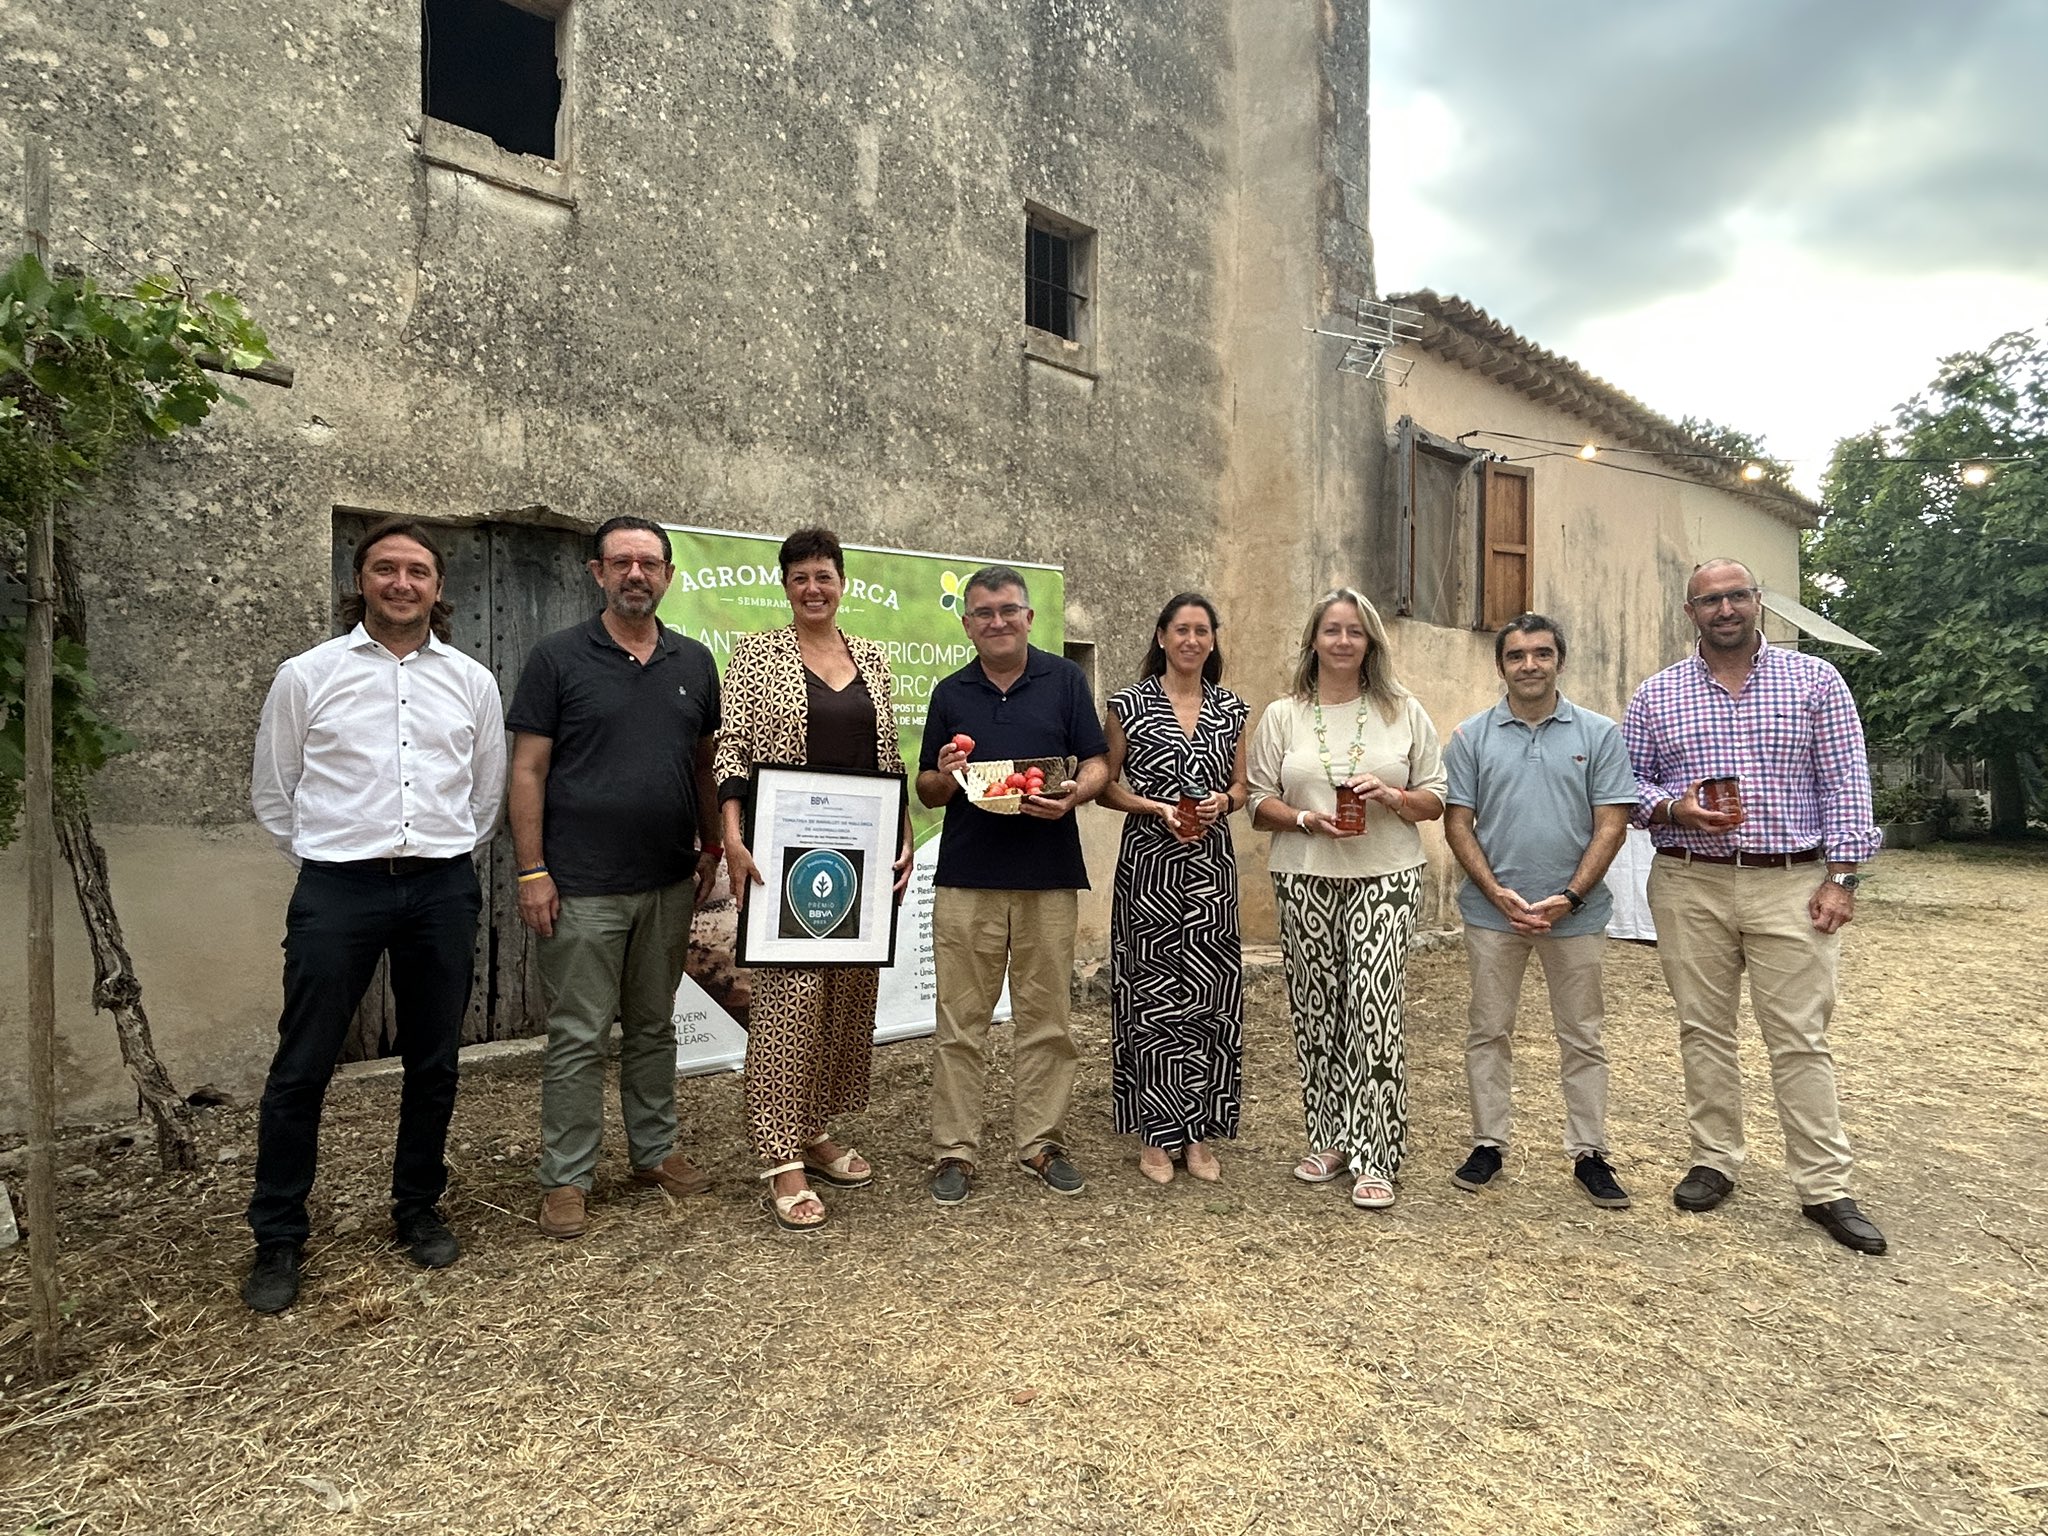 La premiada tomàtiga de ramellet de s'Hort d'en Boira, al restaurants dels germans Roca de Girona